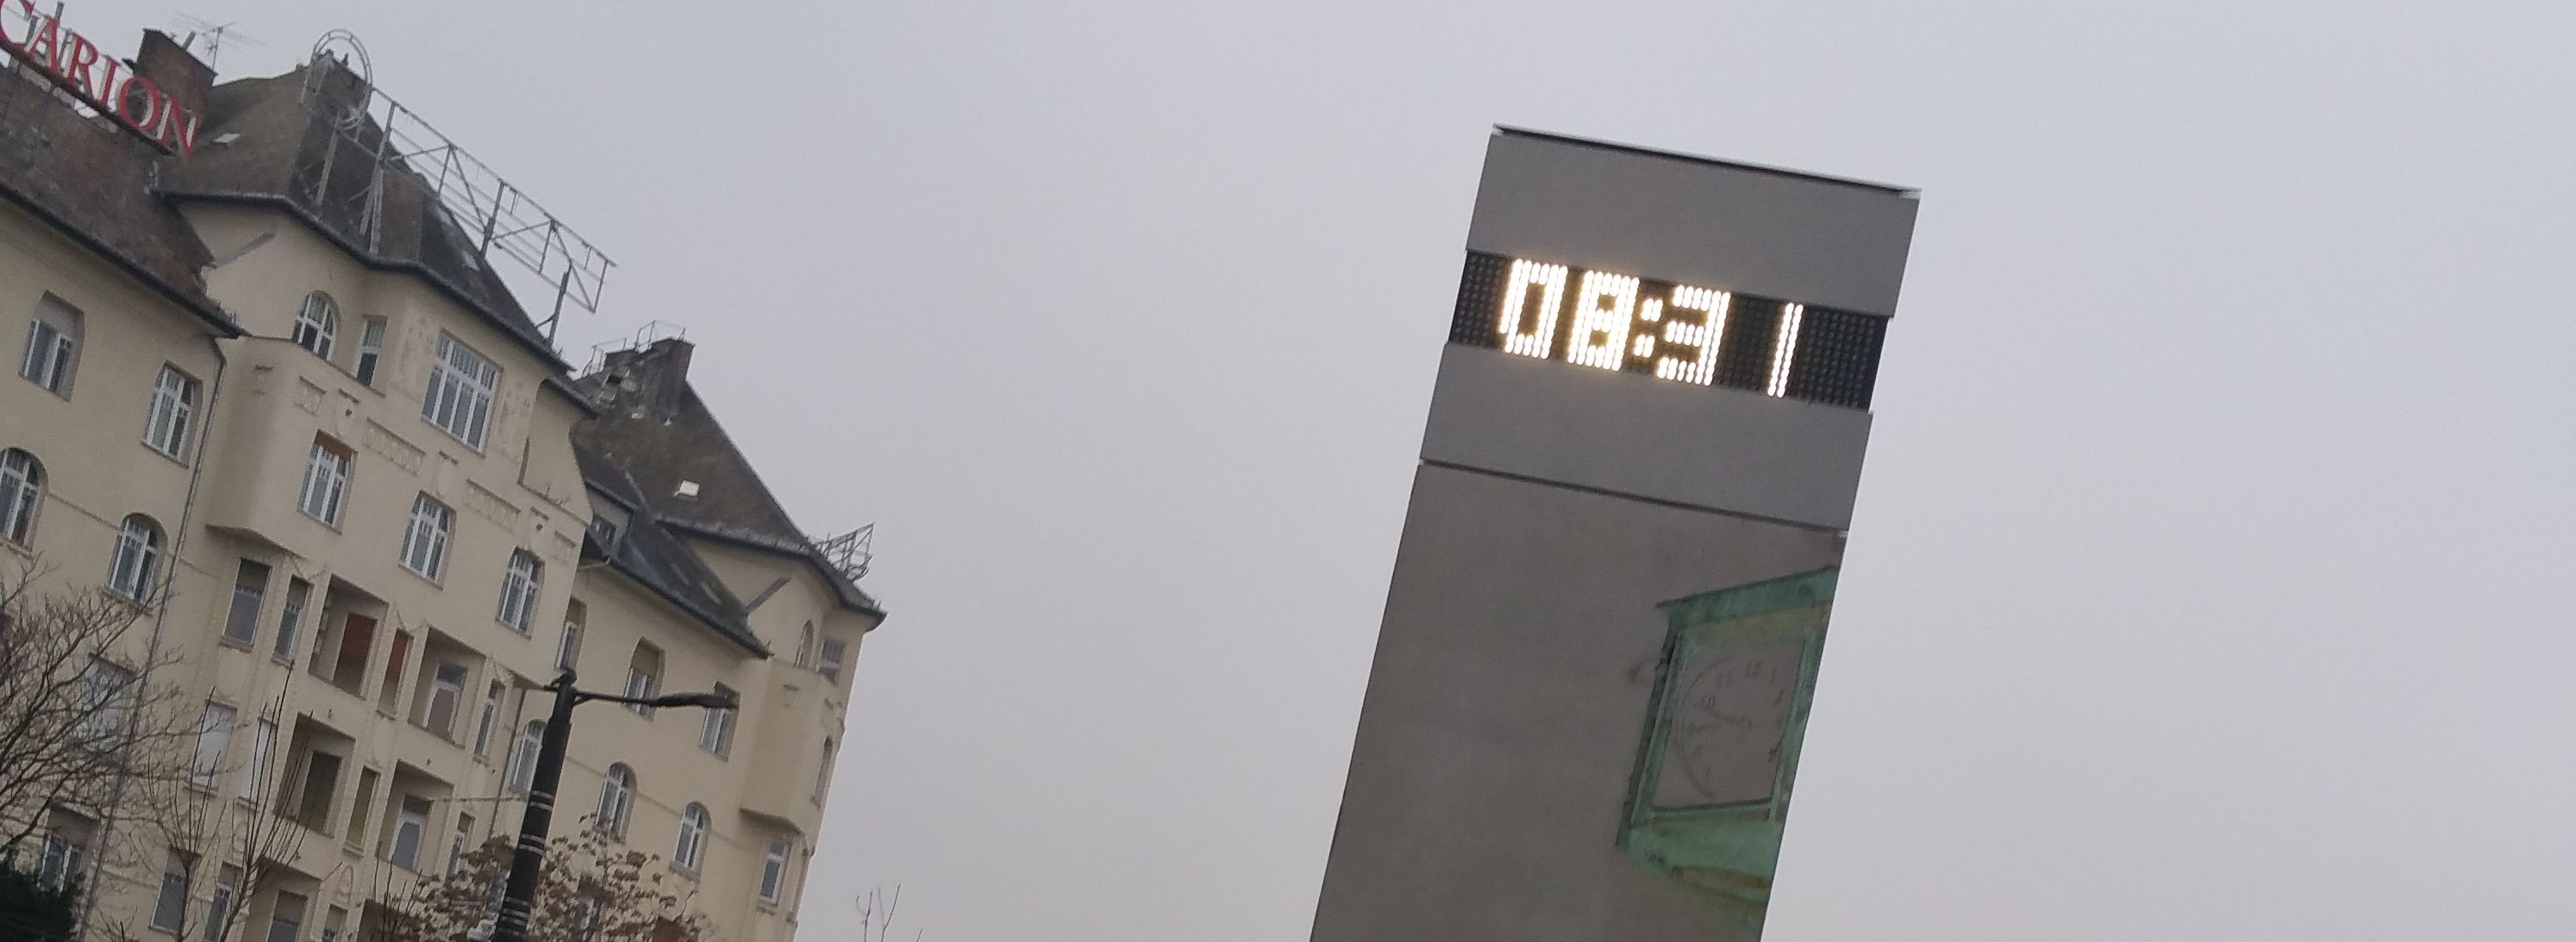 Több mint 14 órája egyhuzamban működik a Moszkva téri óra